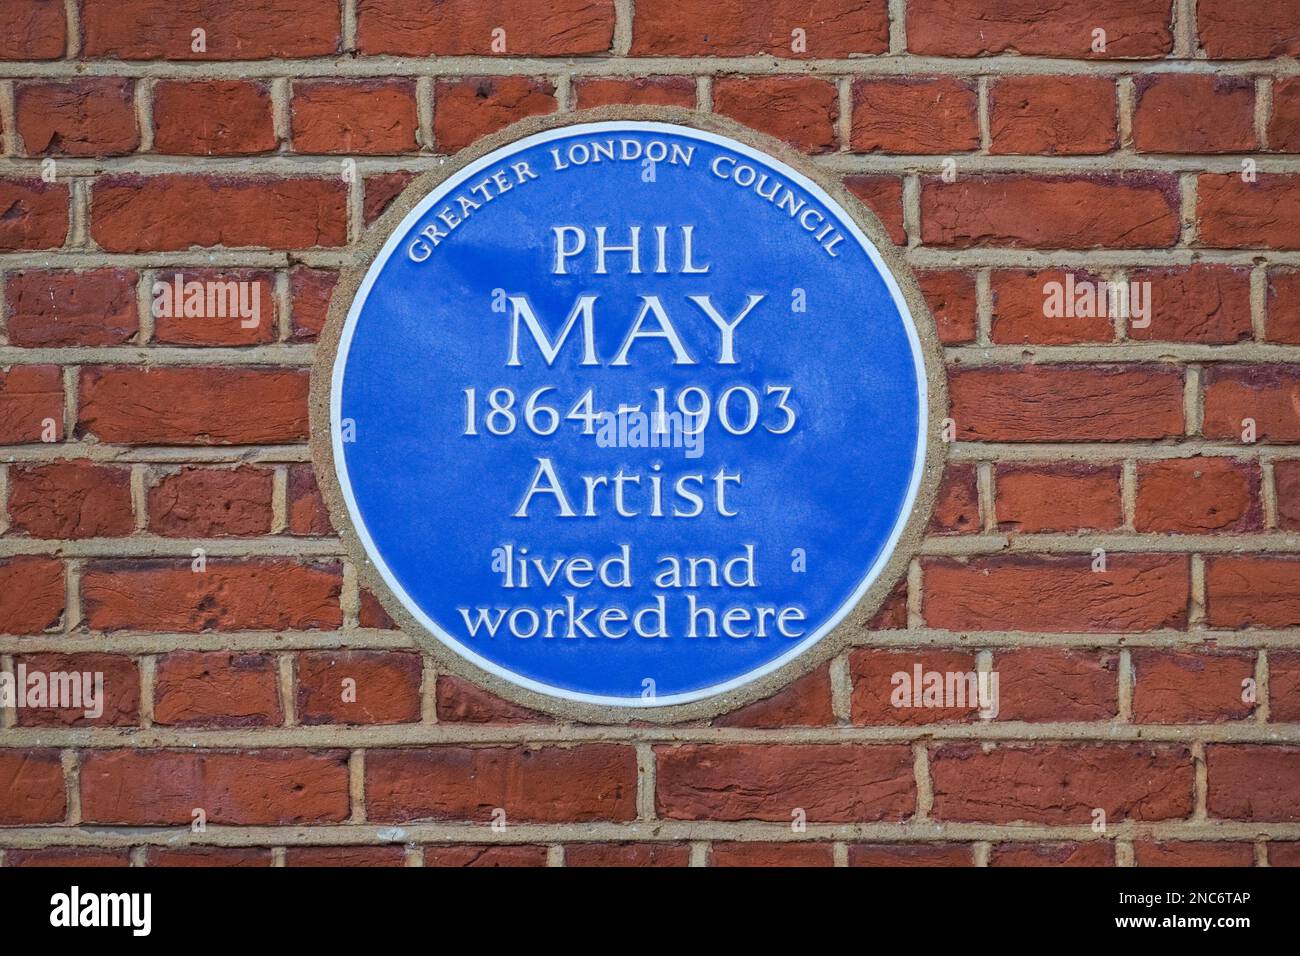 Une plaque bleue de Phil May, Londres Angleterre Royaume-Uni Banque D'Images